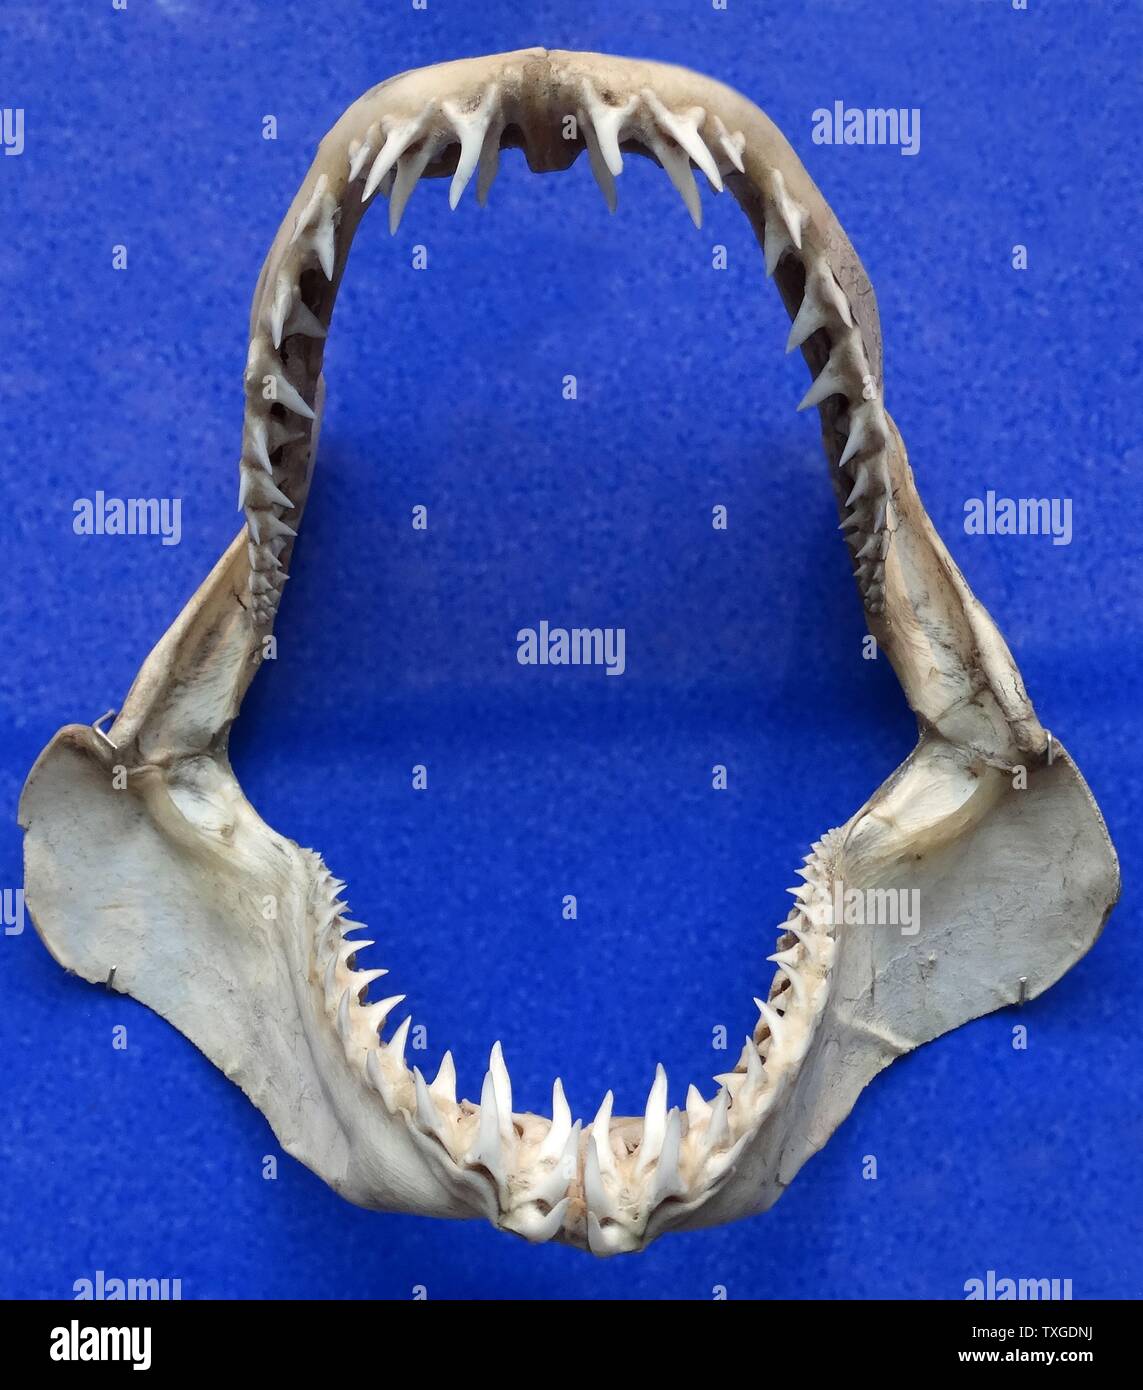 Kiefer von Isurus Oxyrinchus (Shortfin Mako Shark) Isurus Oxyrinchus ist ein große Makrelen Hai. Es gekennzeichnet allgemein als der Mako-Hai zusammen mit der Longfin Mako Hai. Datiert 1810 Stockfoto